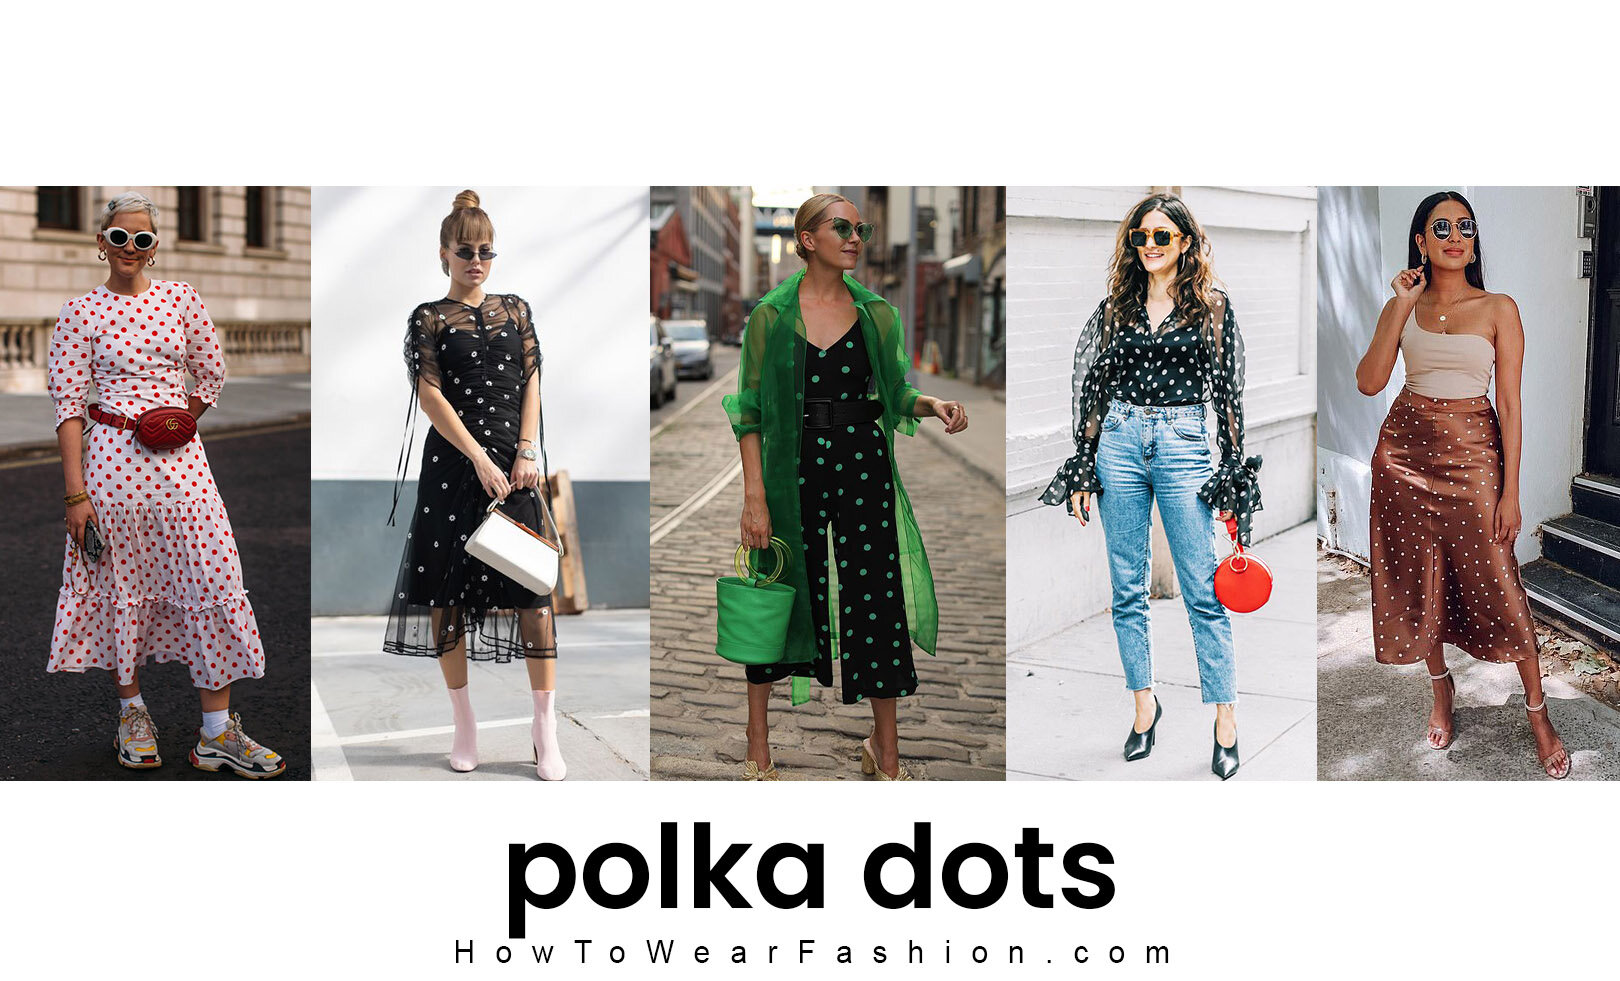 Polka dots spring to life this season